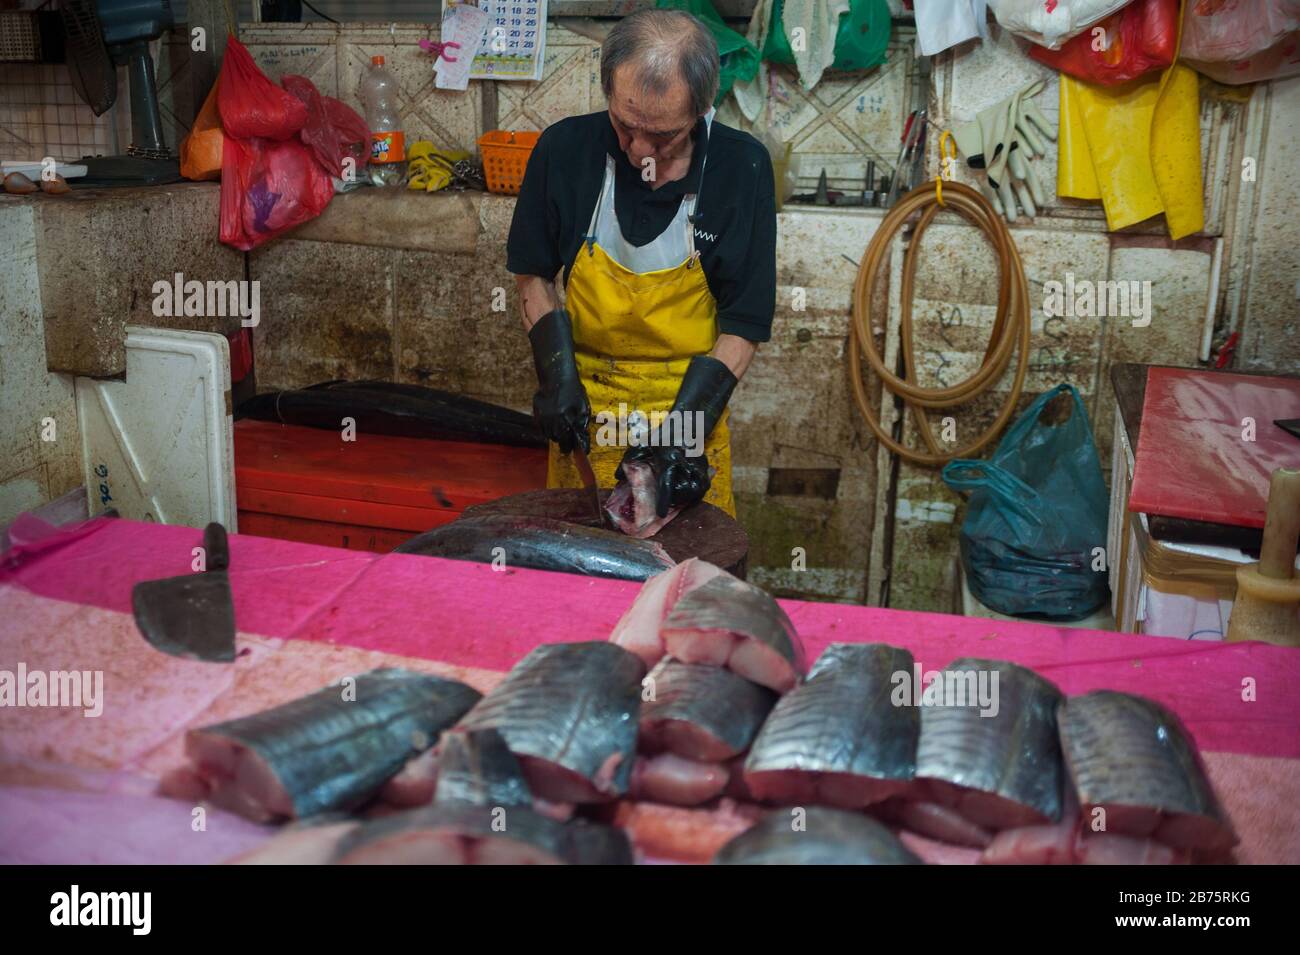 20.07.2017, Singapour, République de Singapour, Asie - un vendeur de poissons sur le marché de Chinatown. [traduction automatique] Banque D'Images